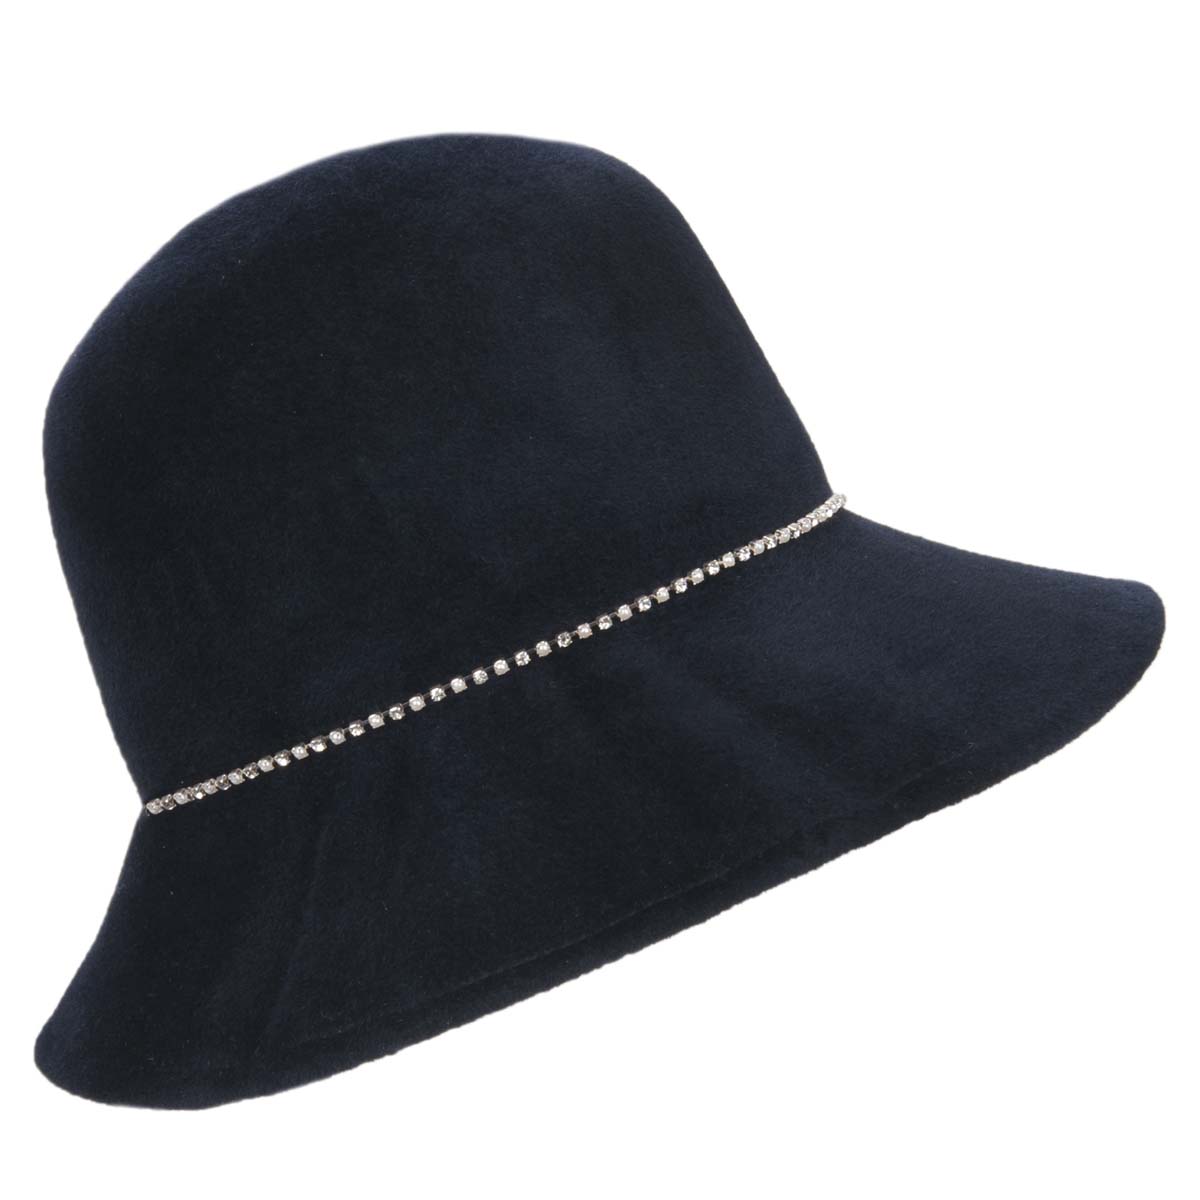 https://pic.hutstuebele.com/Elegant-hat-for-women.44324a.jpg